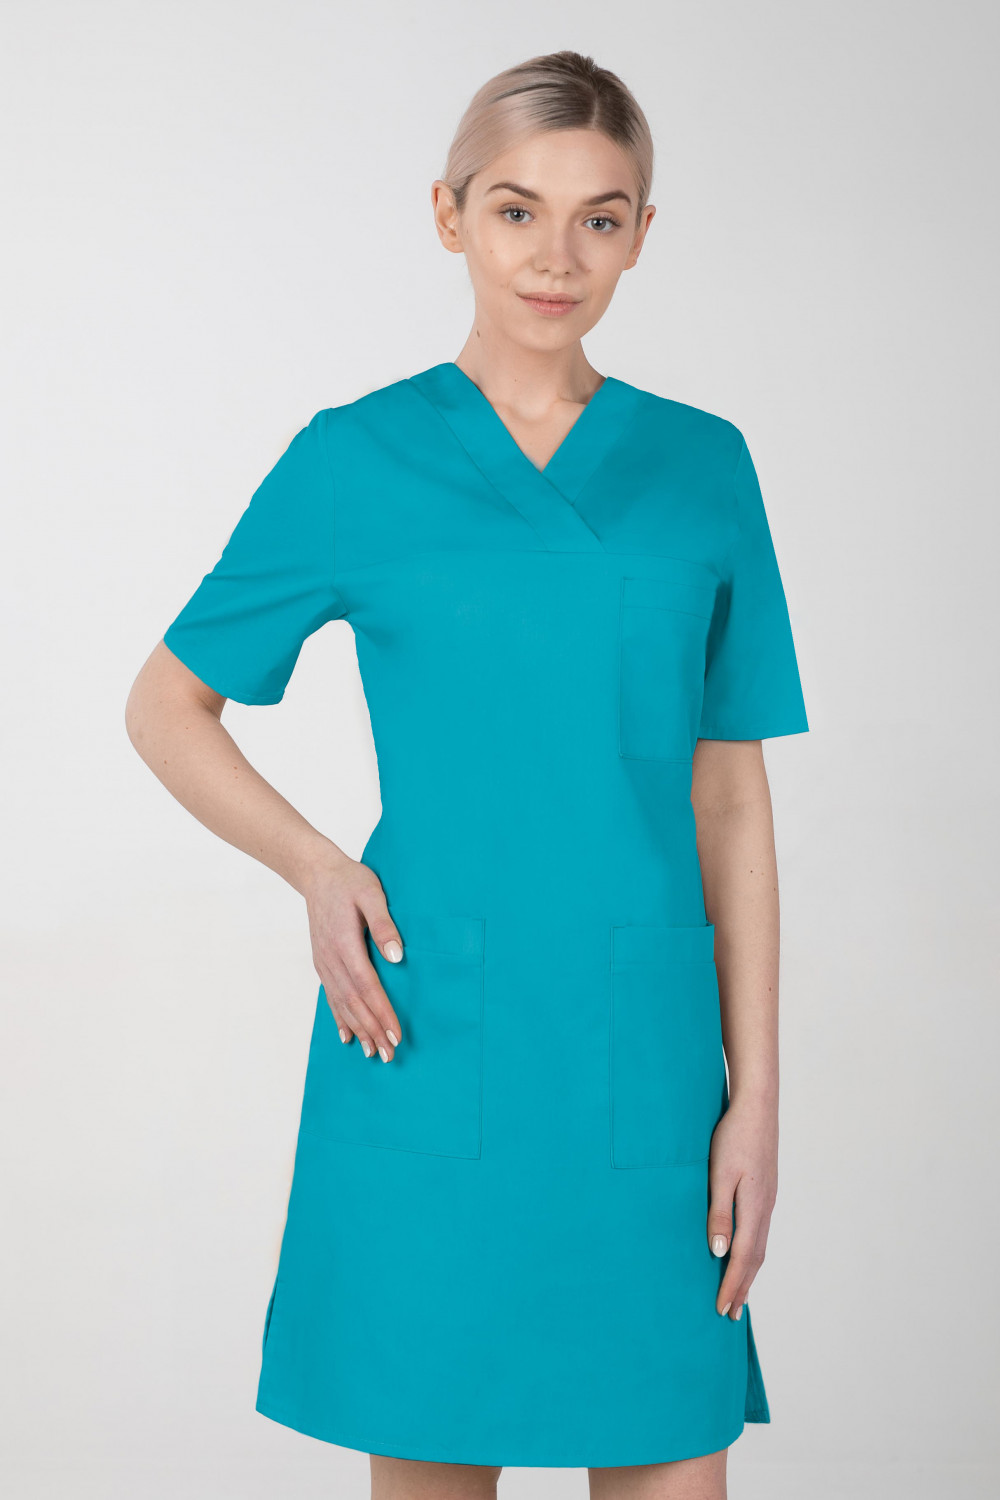 M-076F Sukienka medyczna wiązana  fartuch medyczny kolor turkus